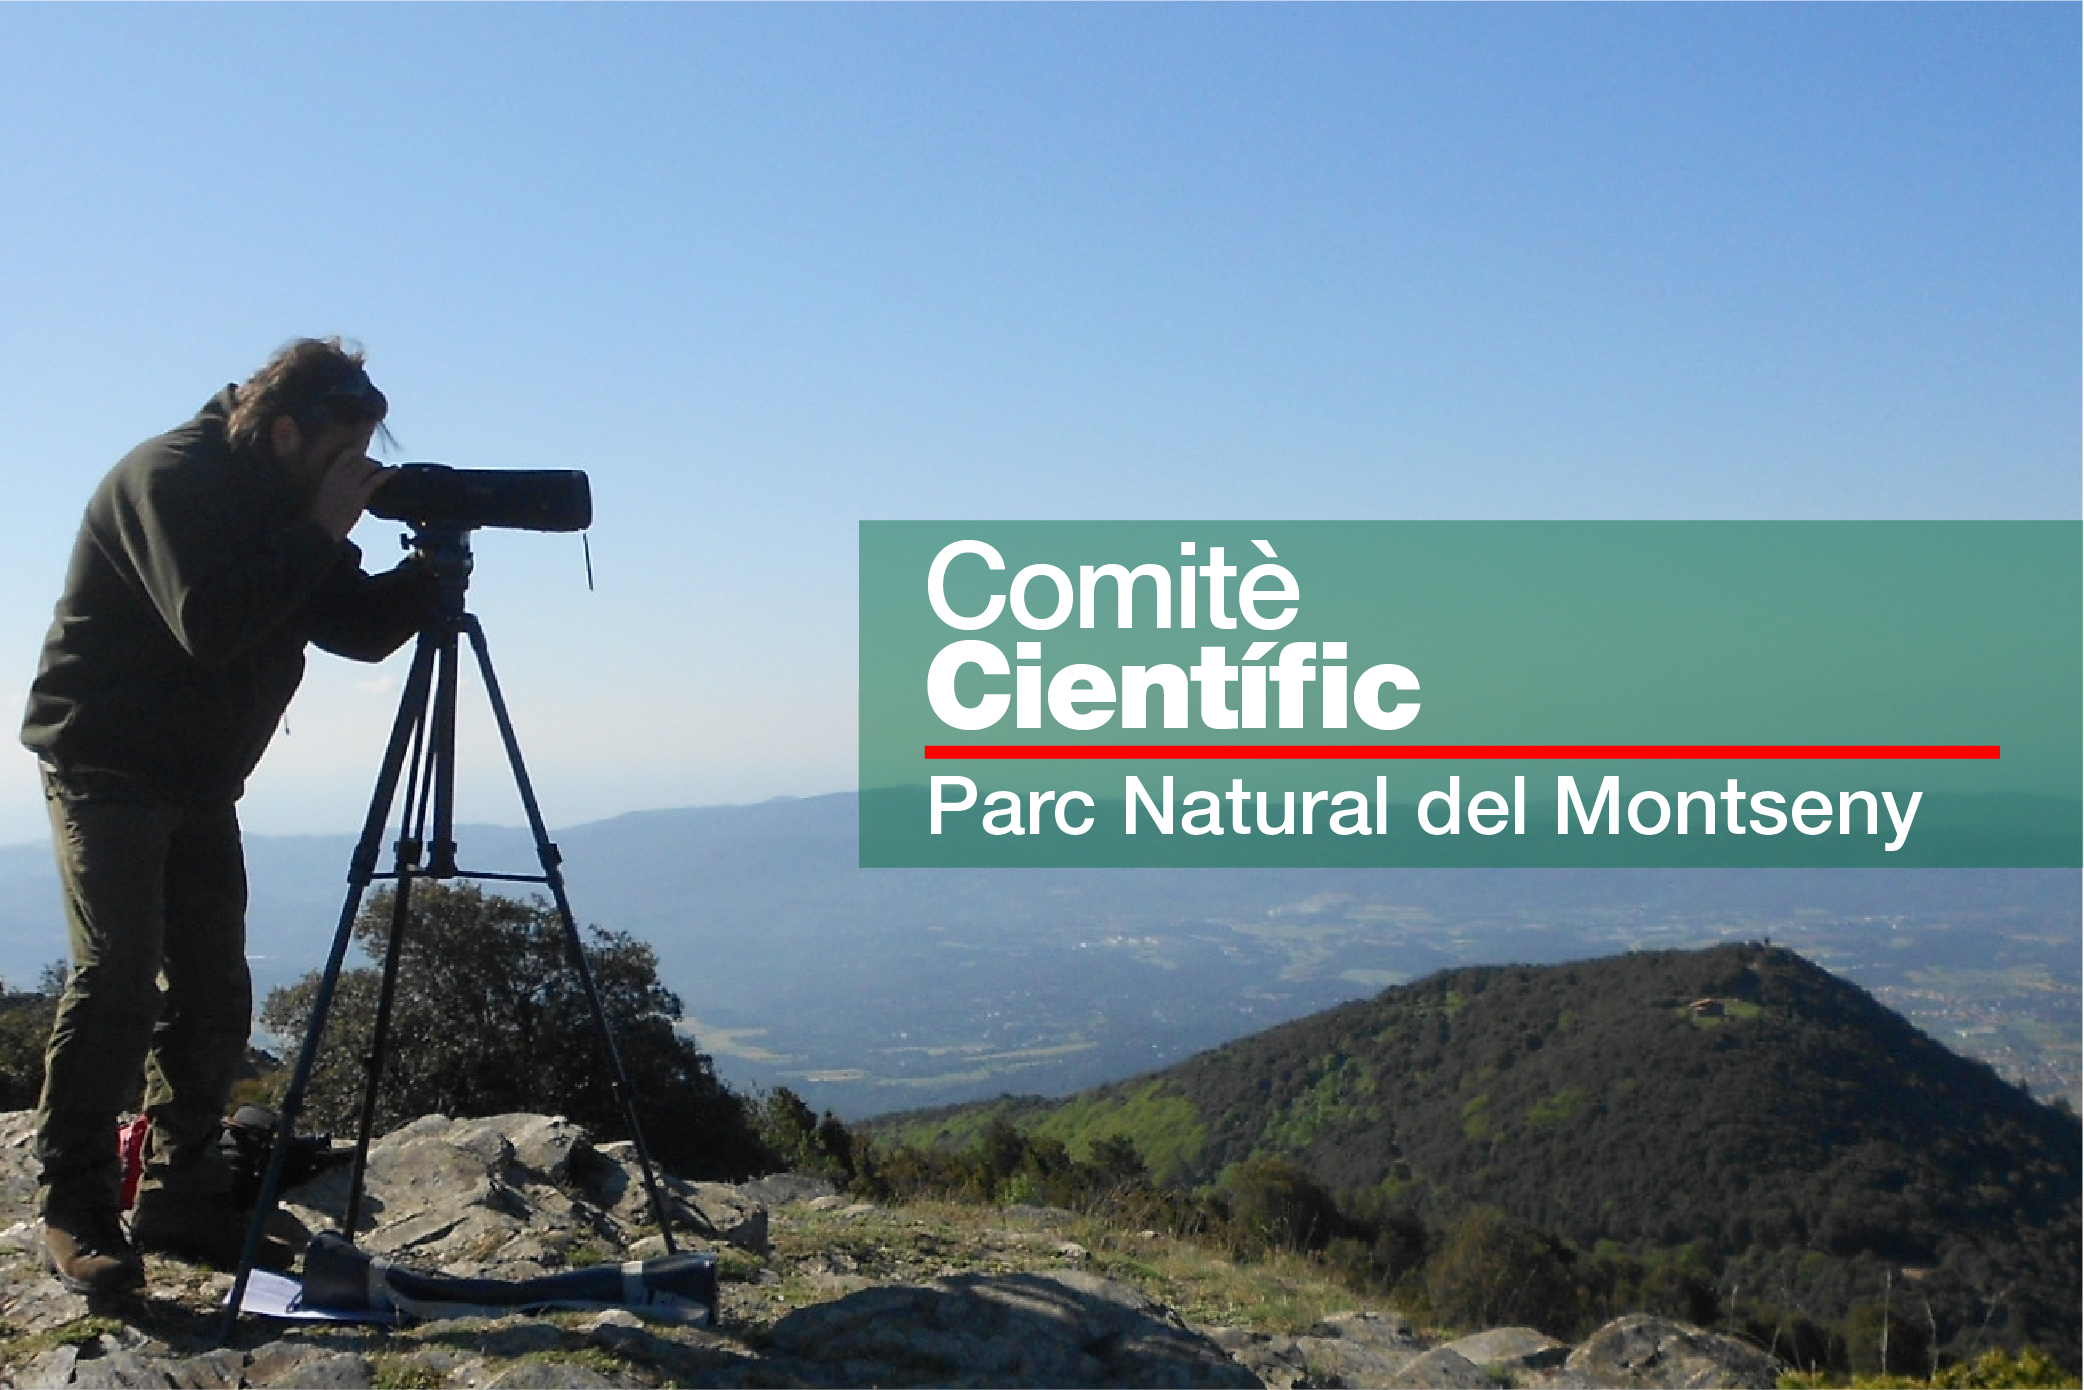 Comitè Científic del Parc Natural del Montseny